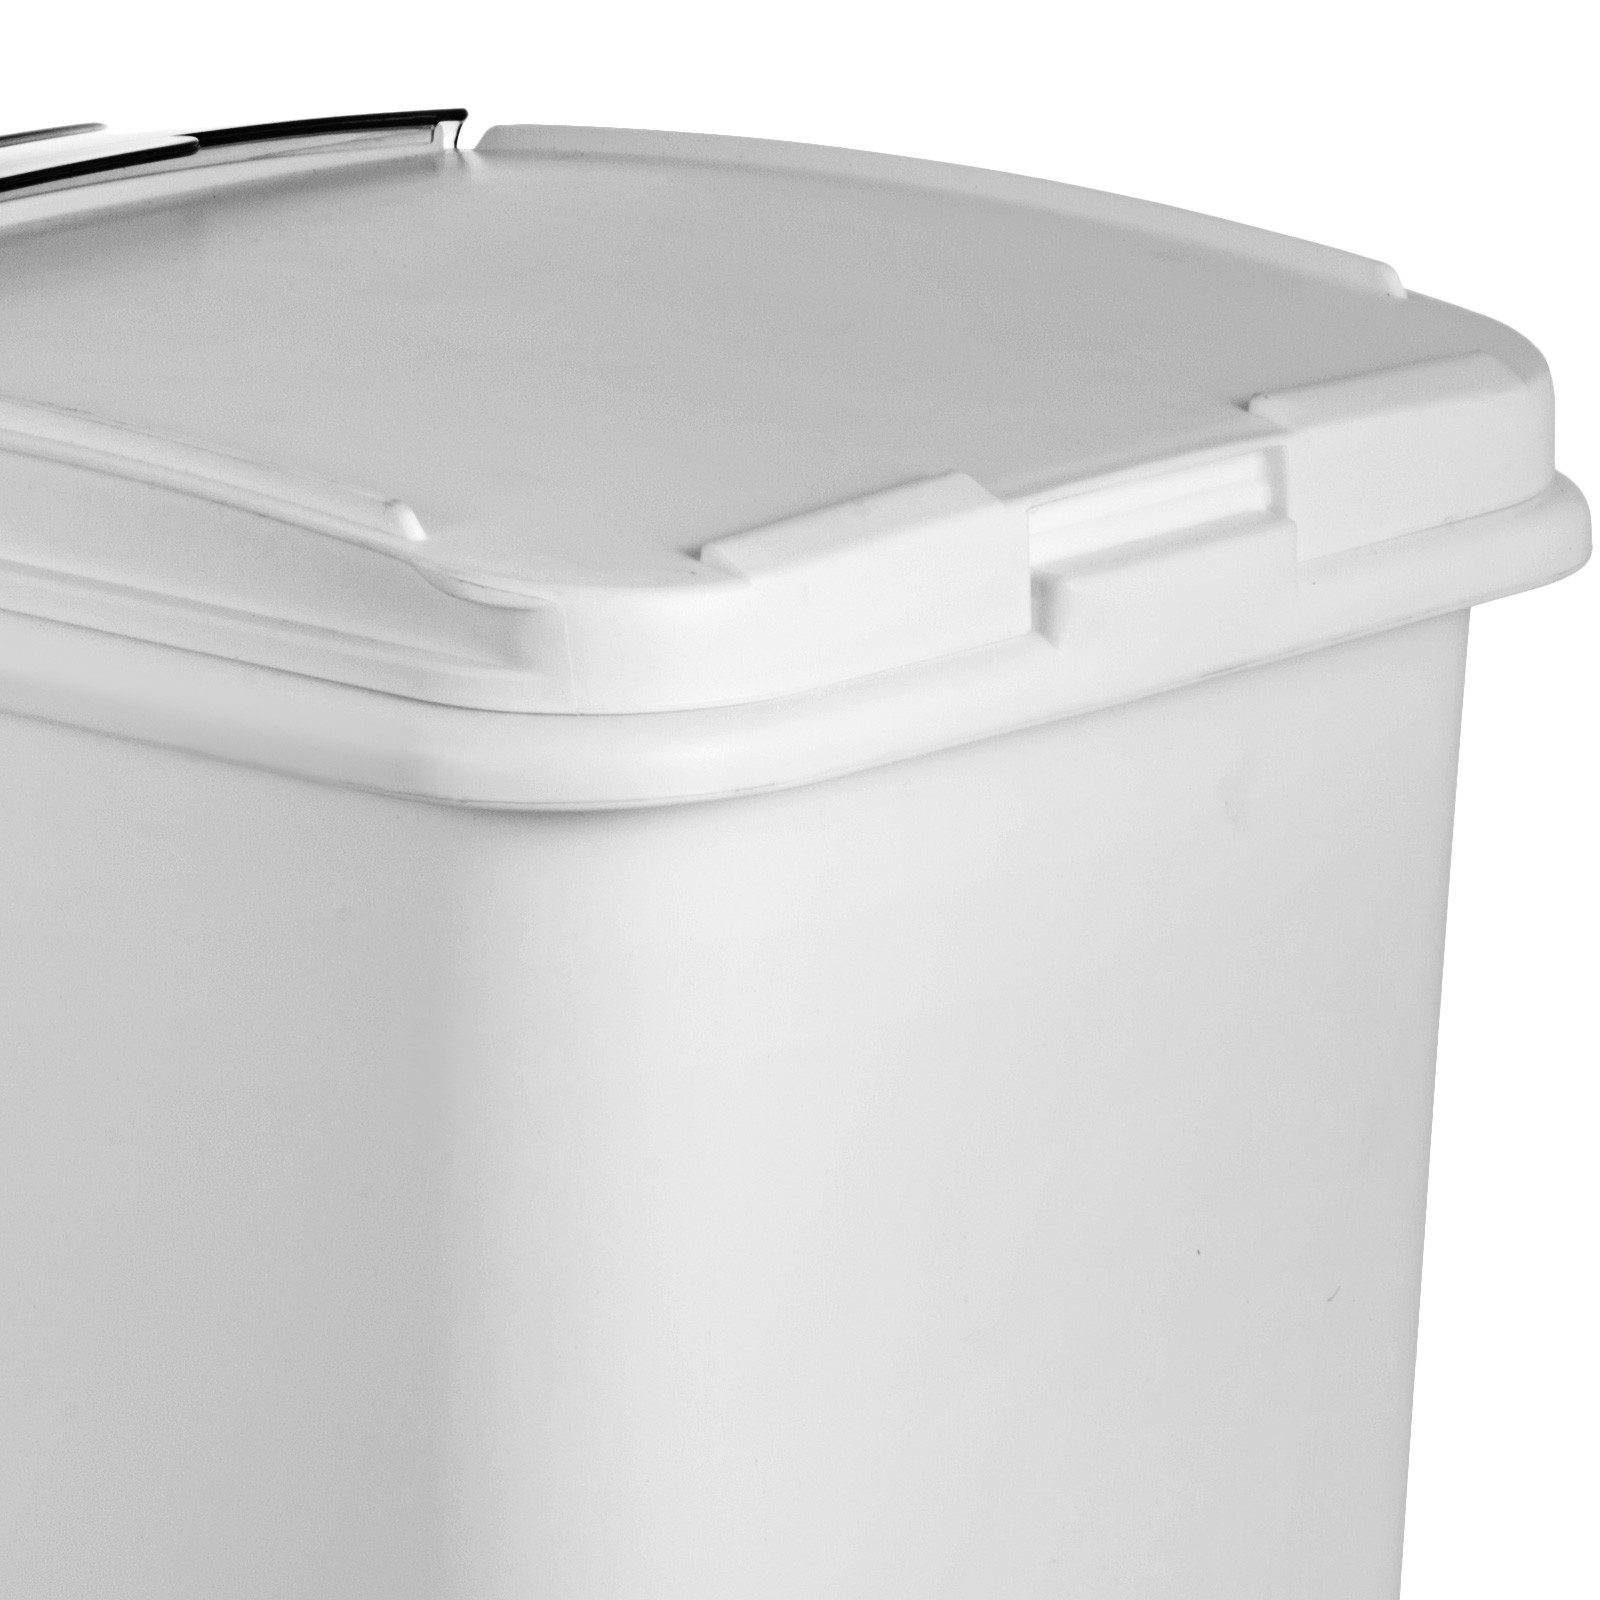 80L Zutatenbehälter Mehlwagen Behälter Lebensmittel Vorratsbehälter mit Deckel 